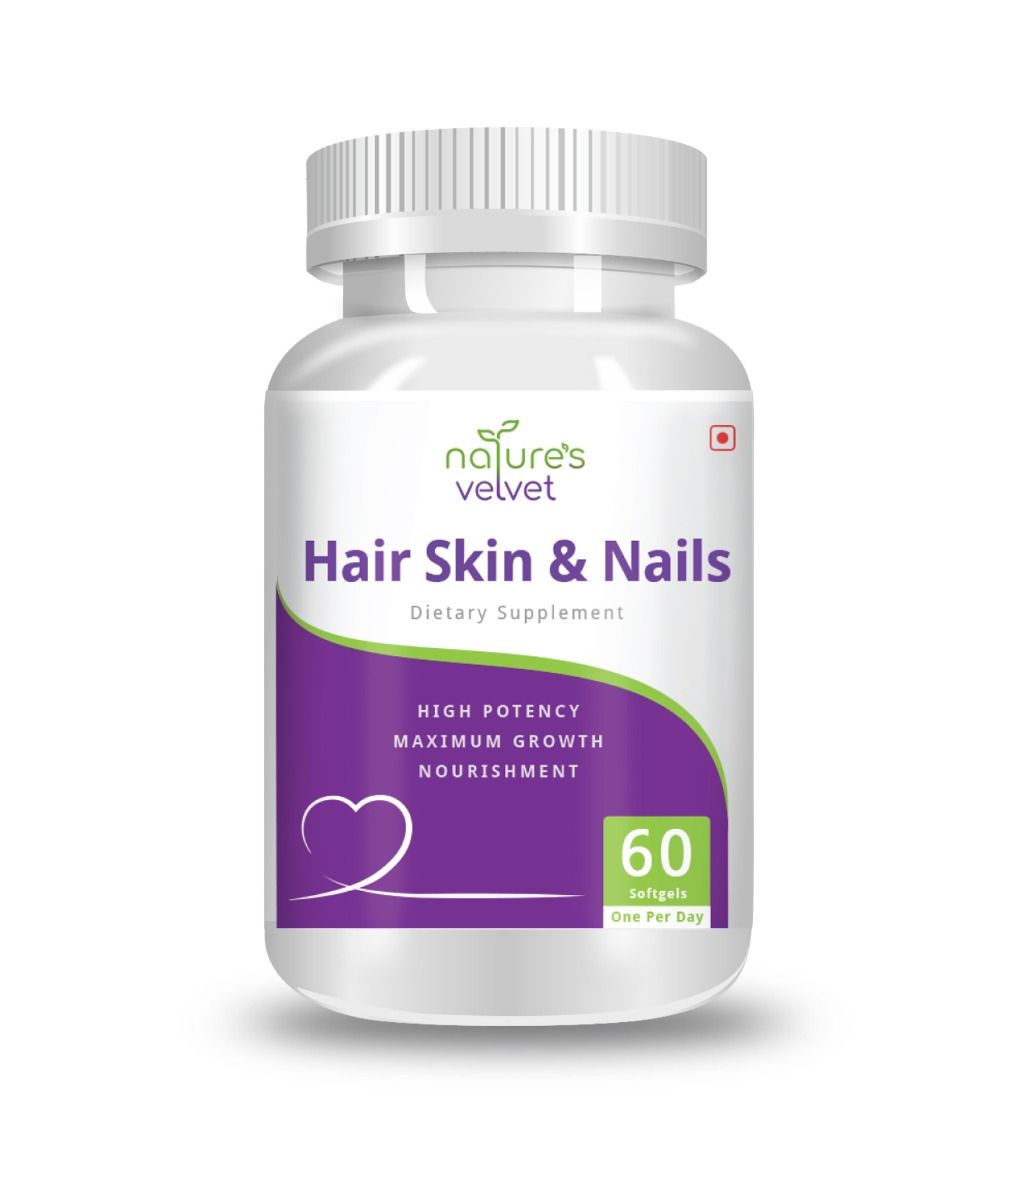 Nature's Velvet Hair Skin & Nails, 60 Softgels Price, Uses, Side ...